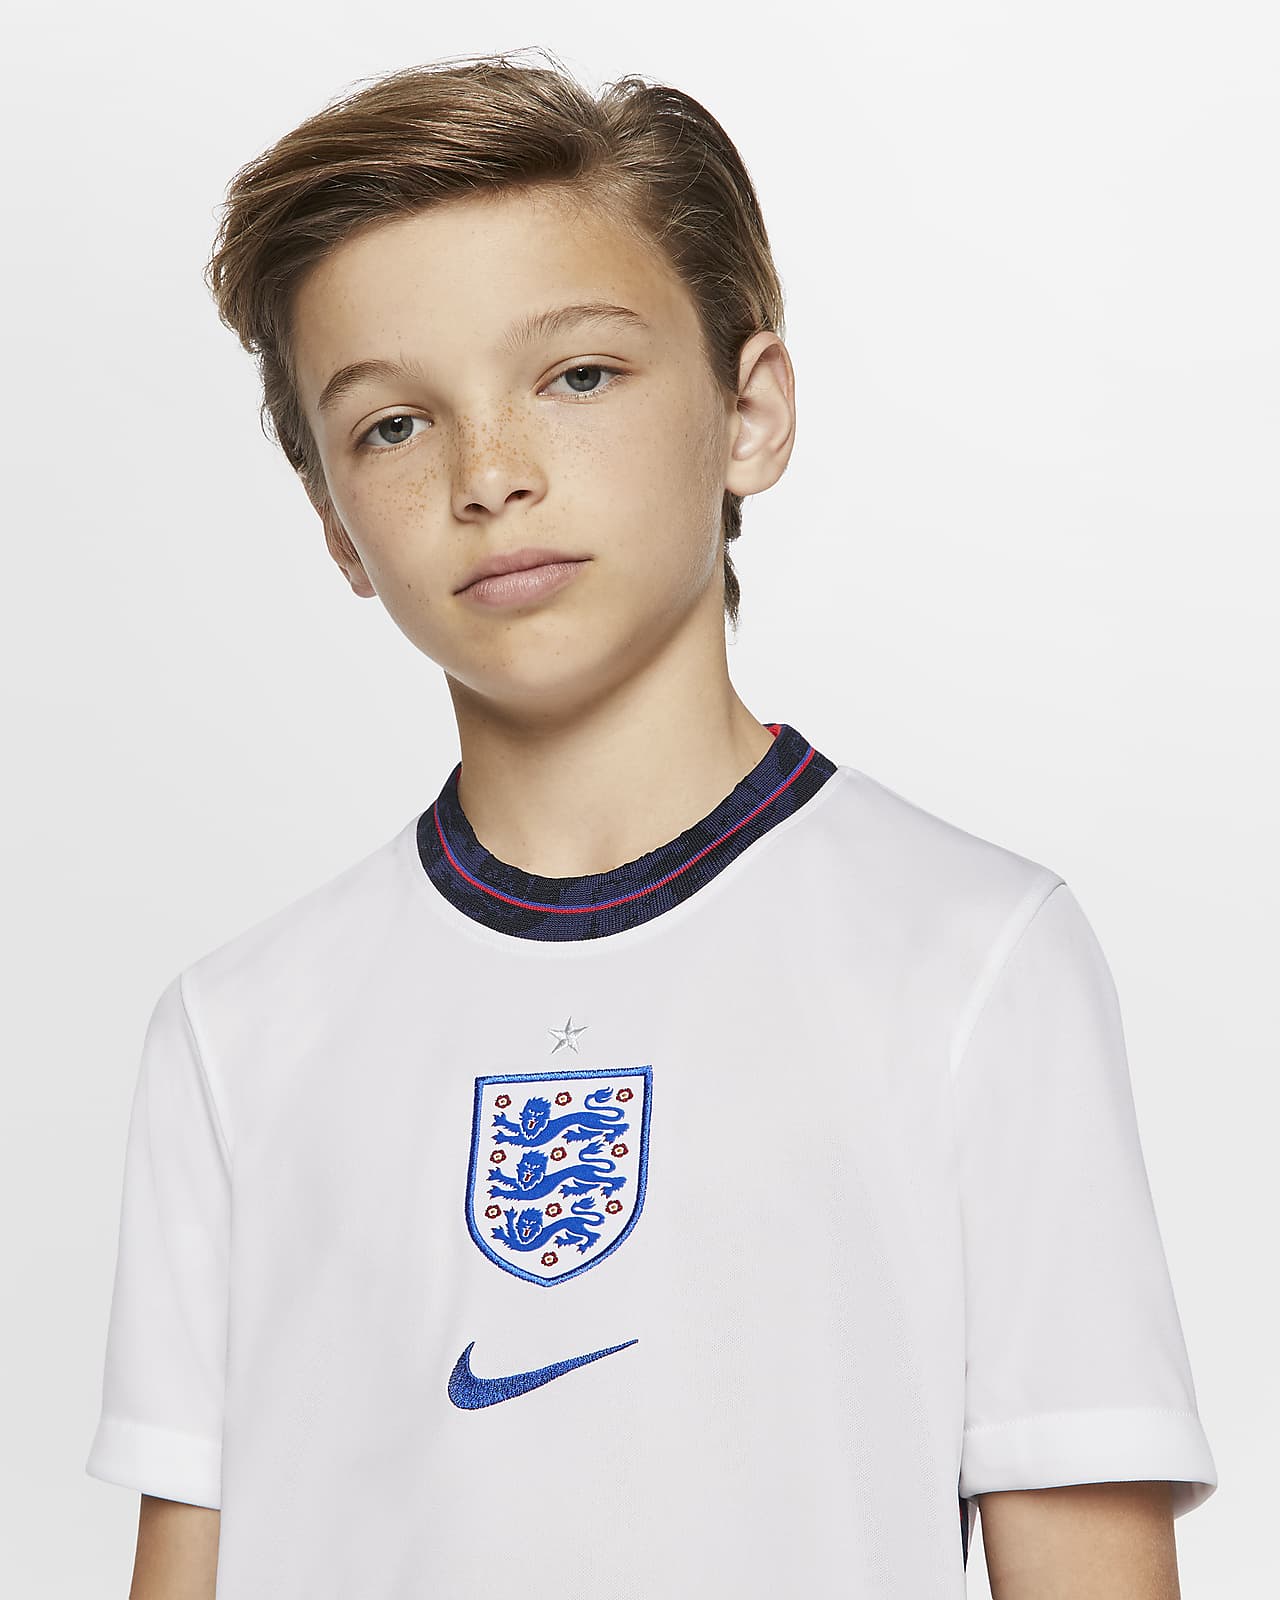 kids england football t shirt